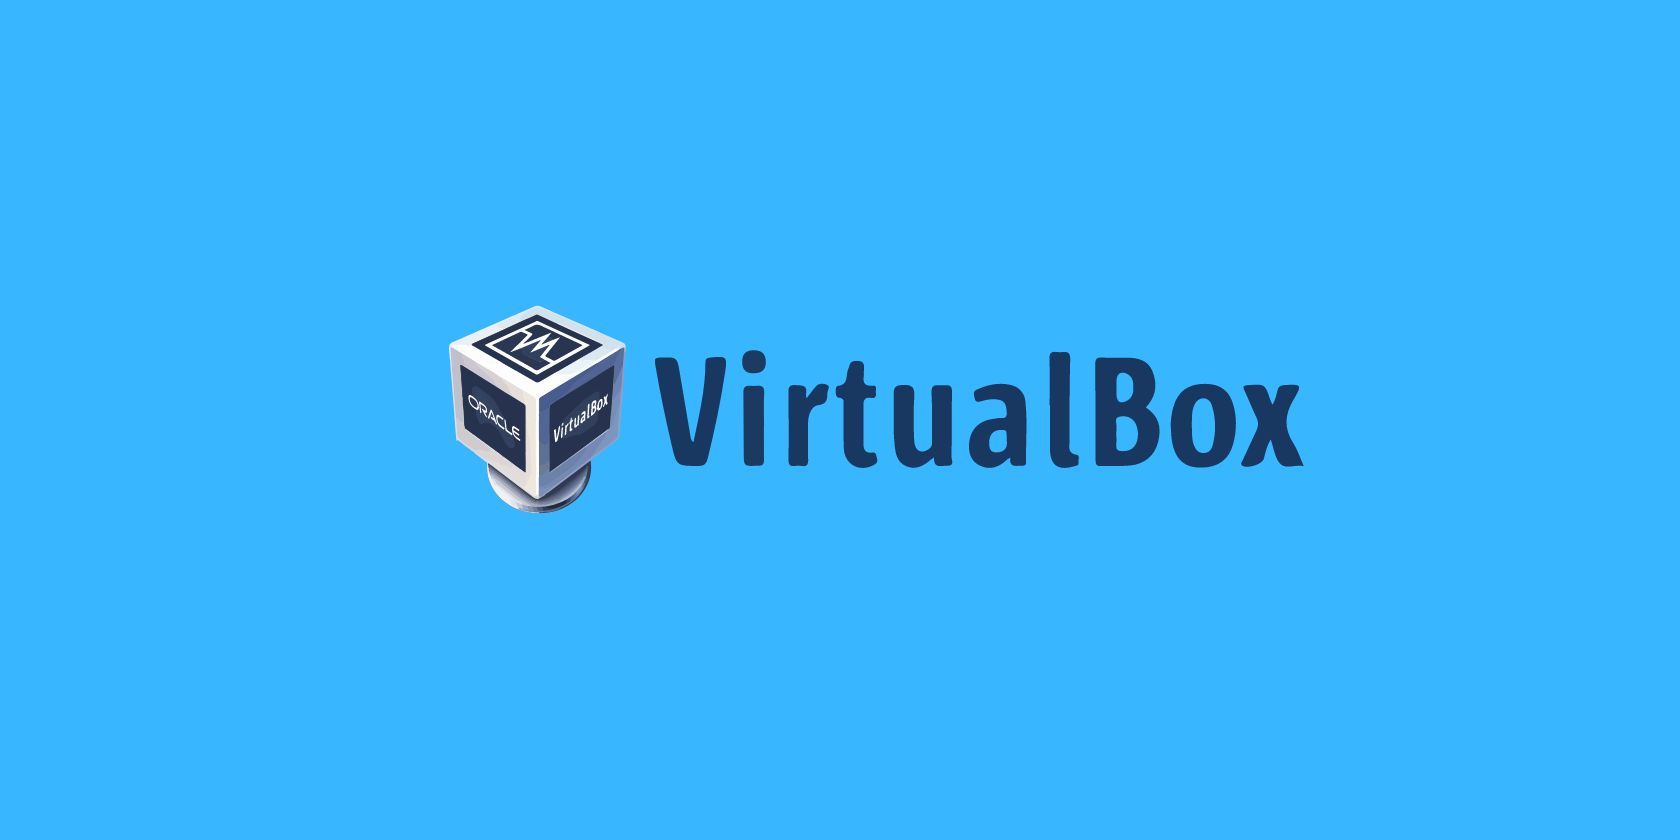 Er VirtualBox trygg å installere?